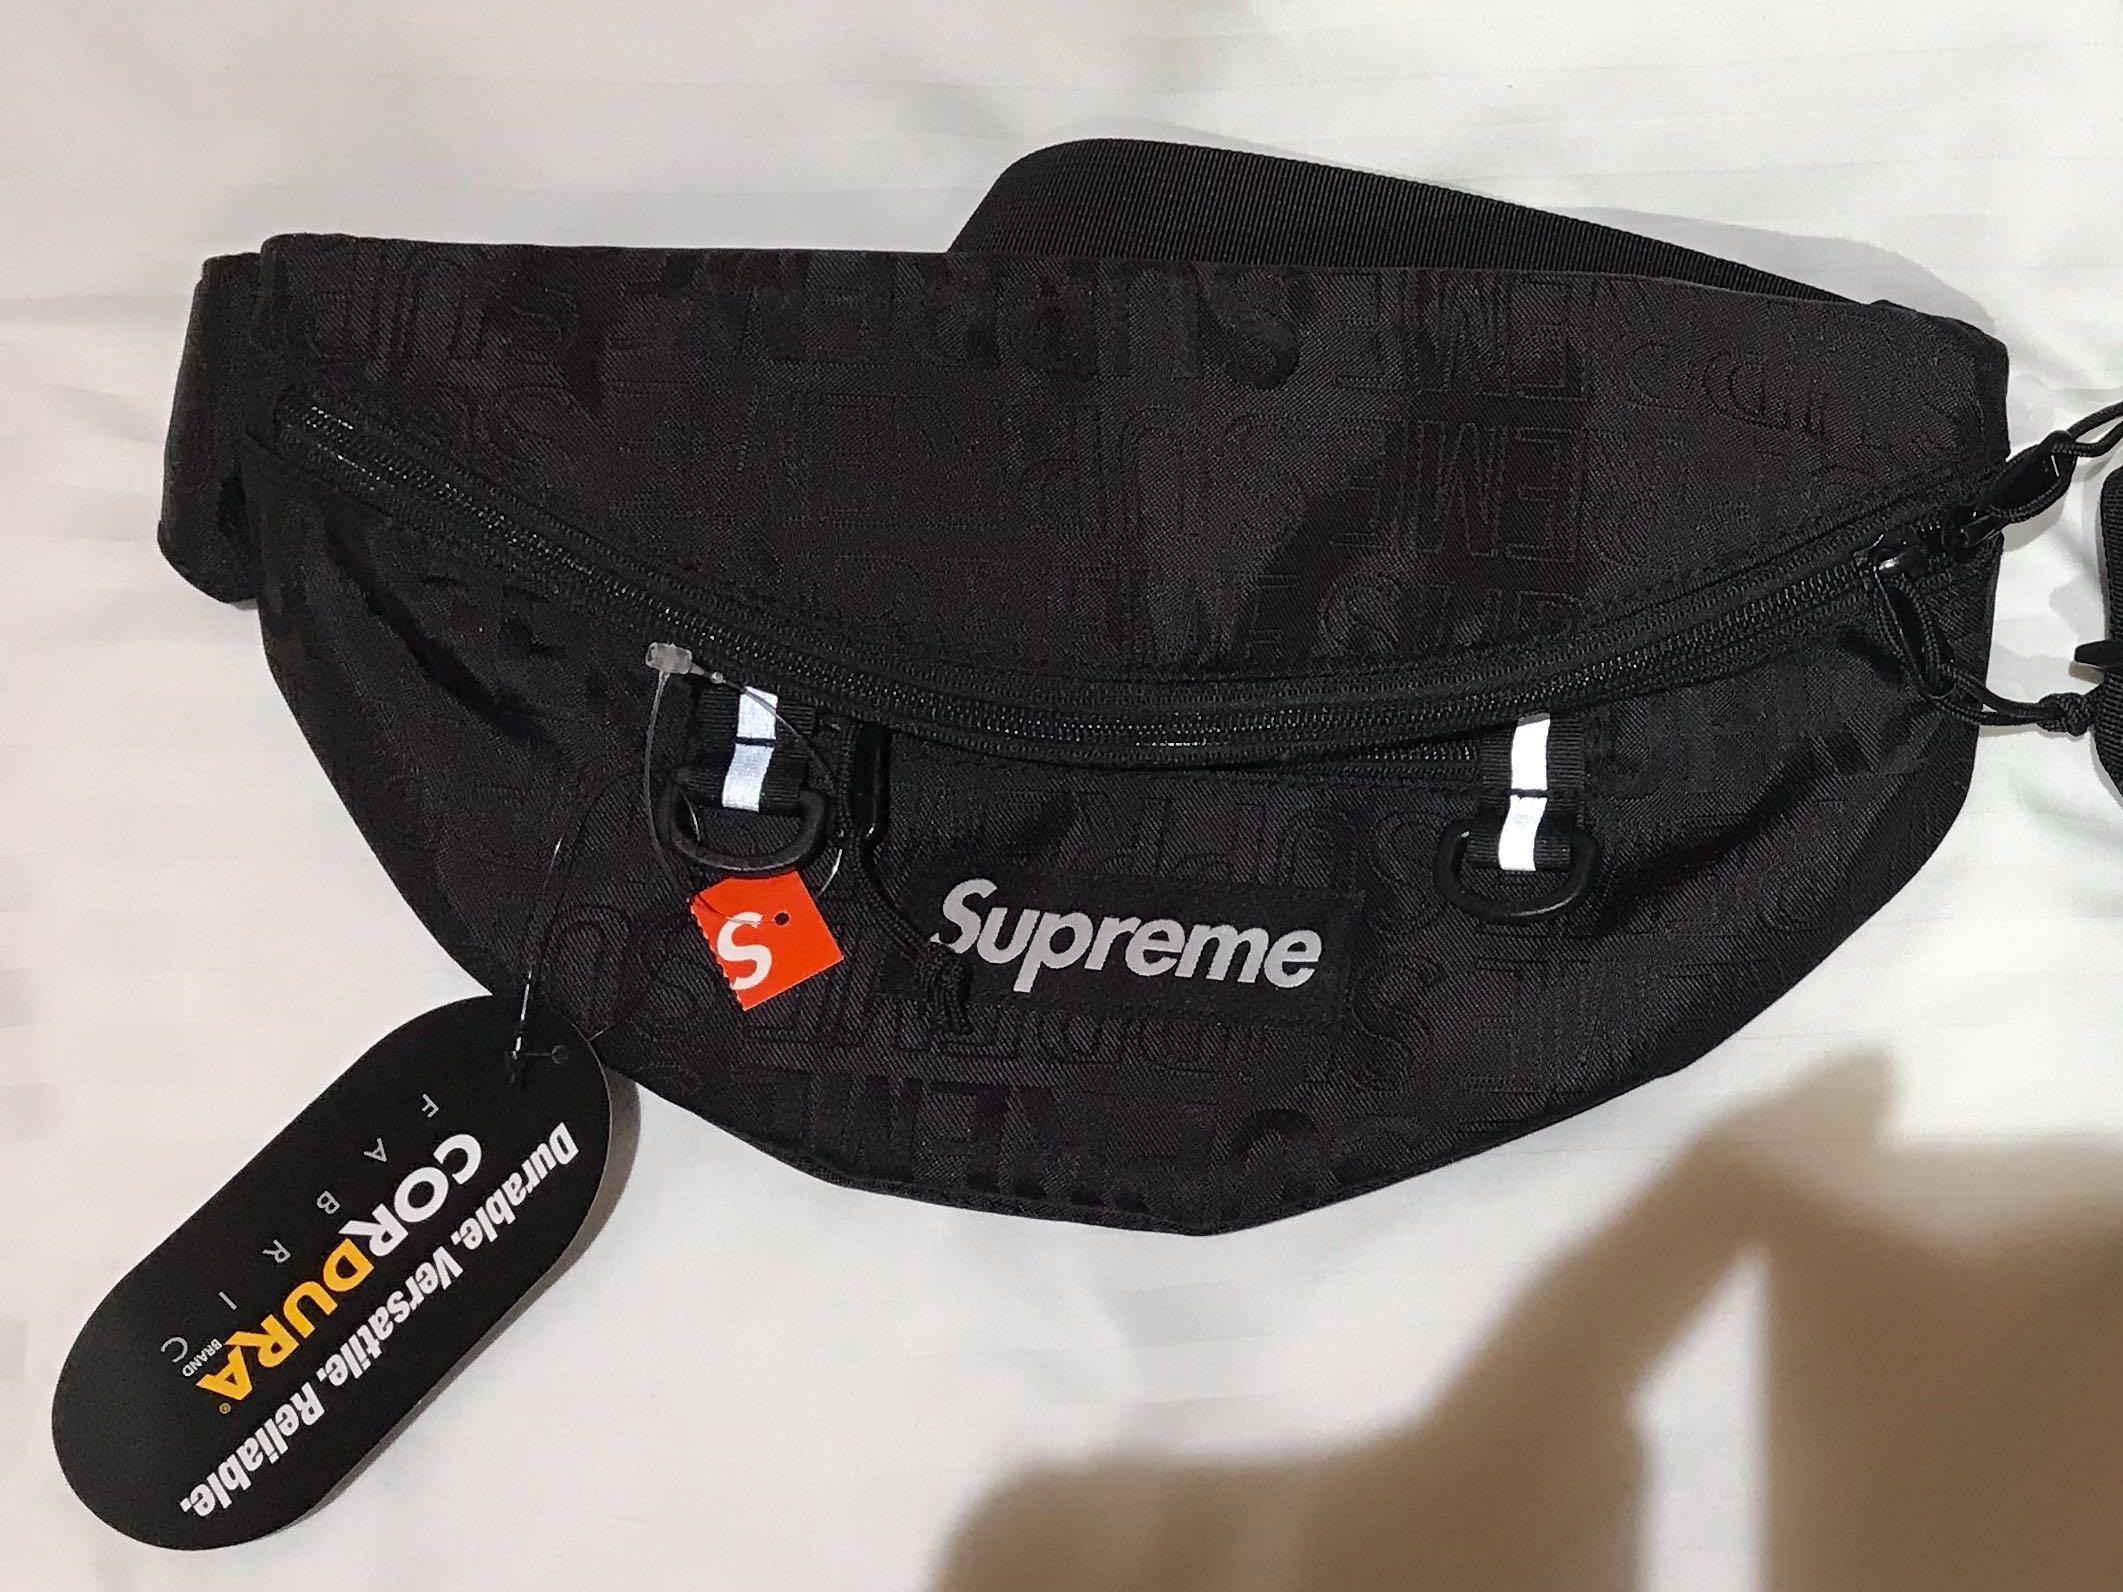 supreme belt bag price